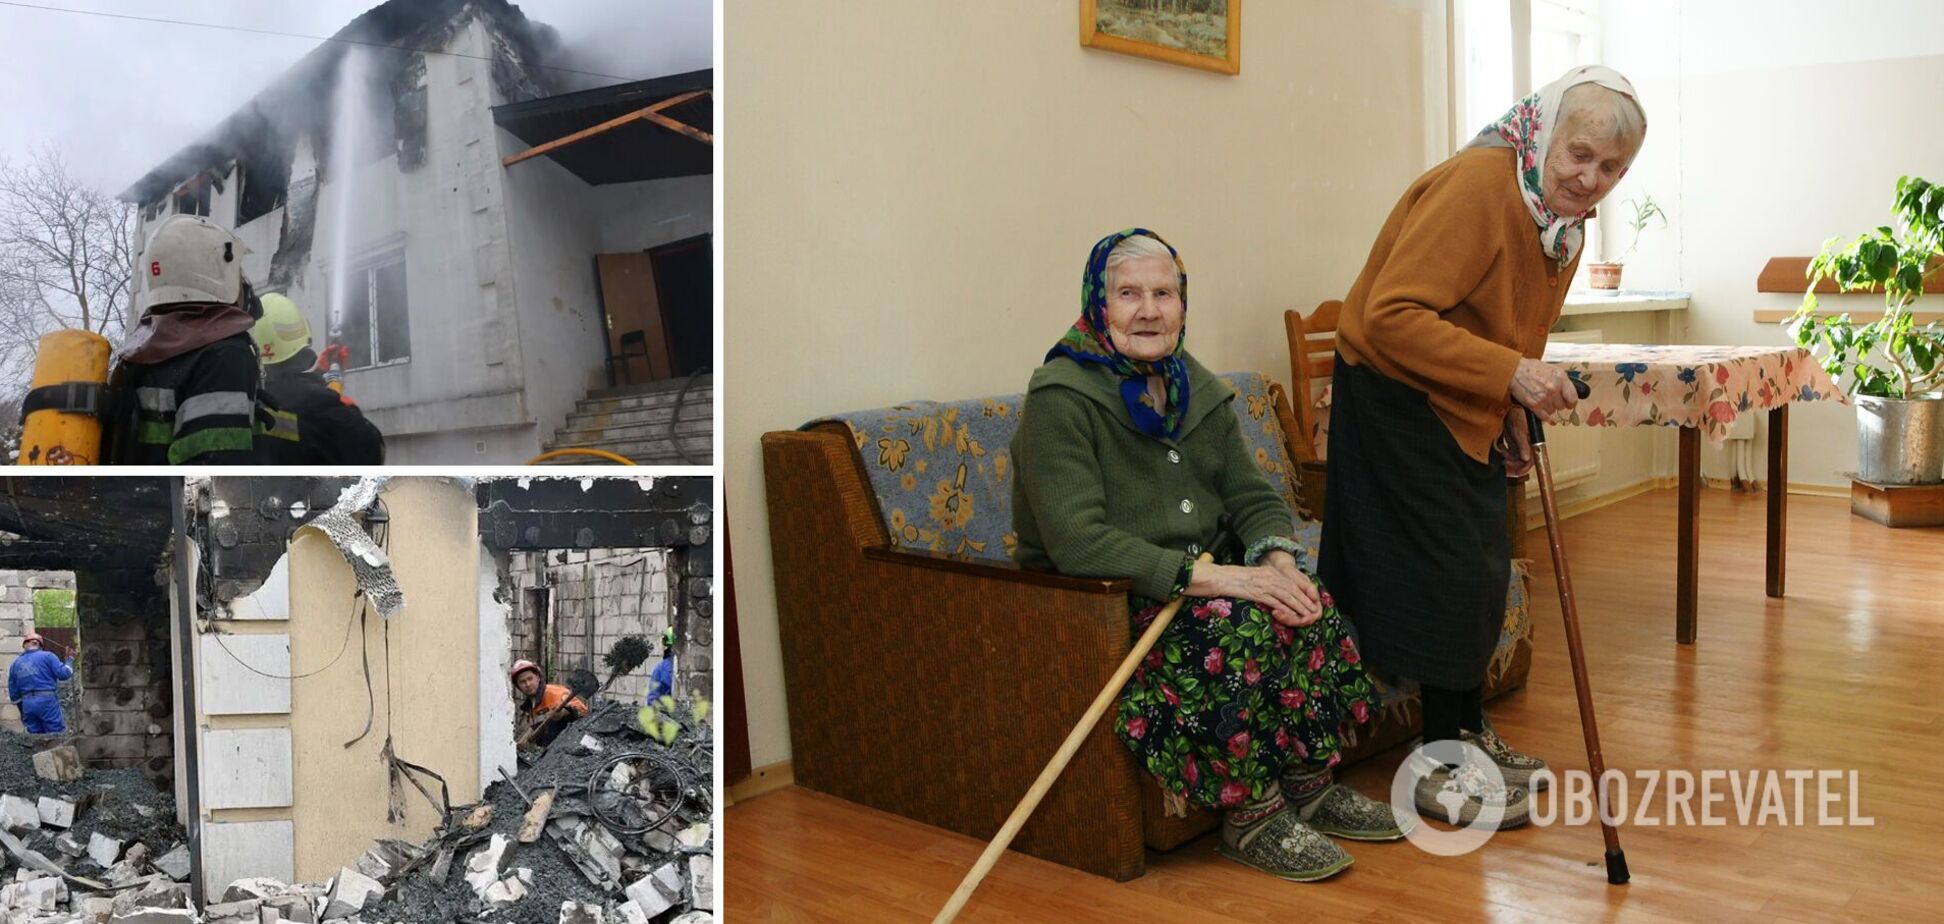 'Випустіть мене звідси!' Що відбувається у нелегальних будинках престарілих і чому скаржаться українці